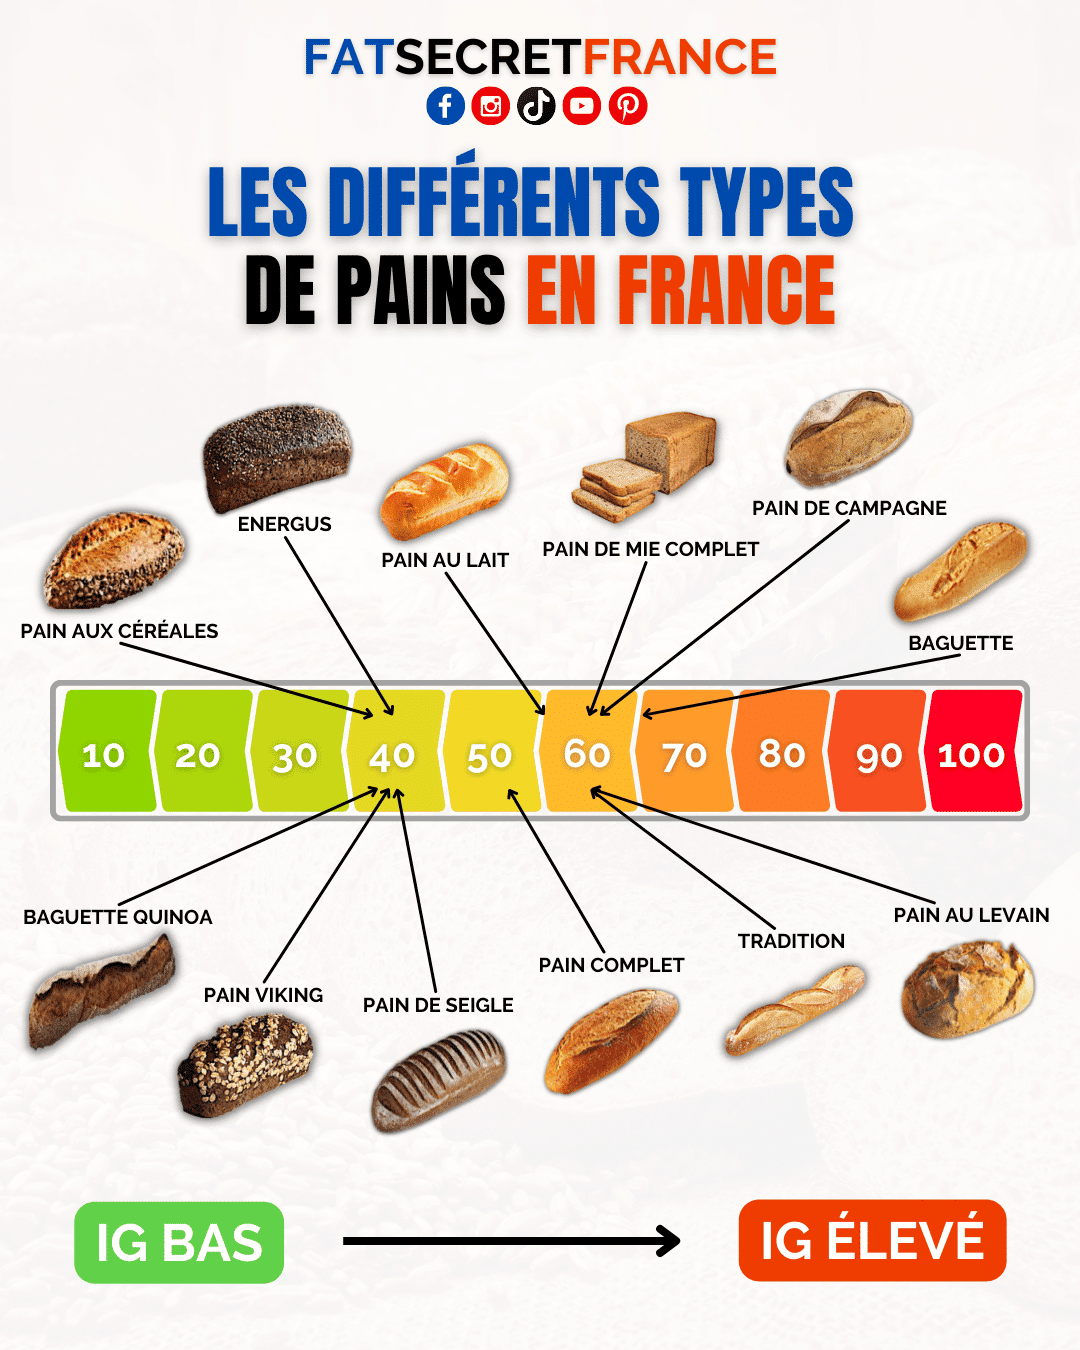 Les différents types de pains en France - IG